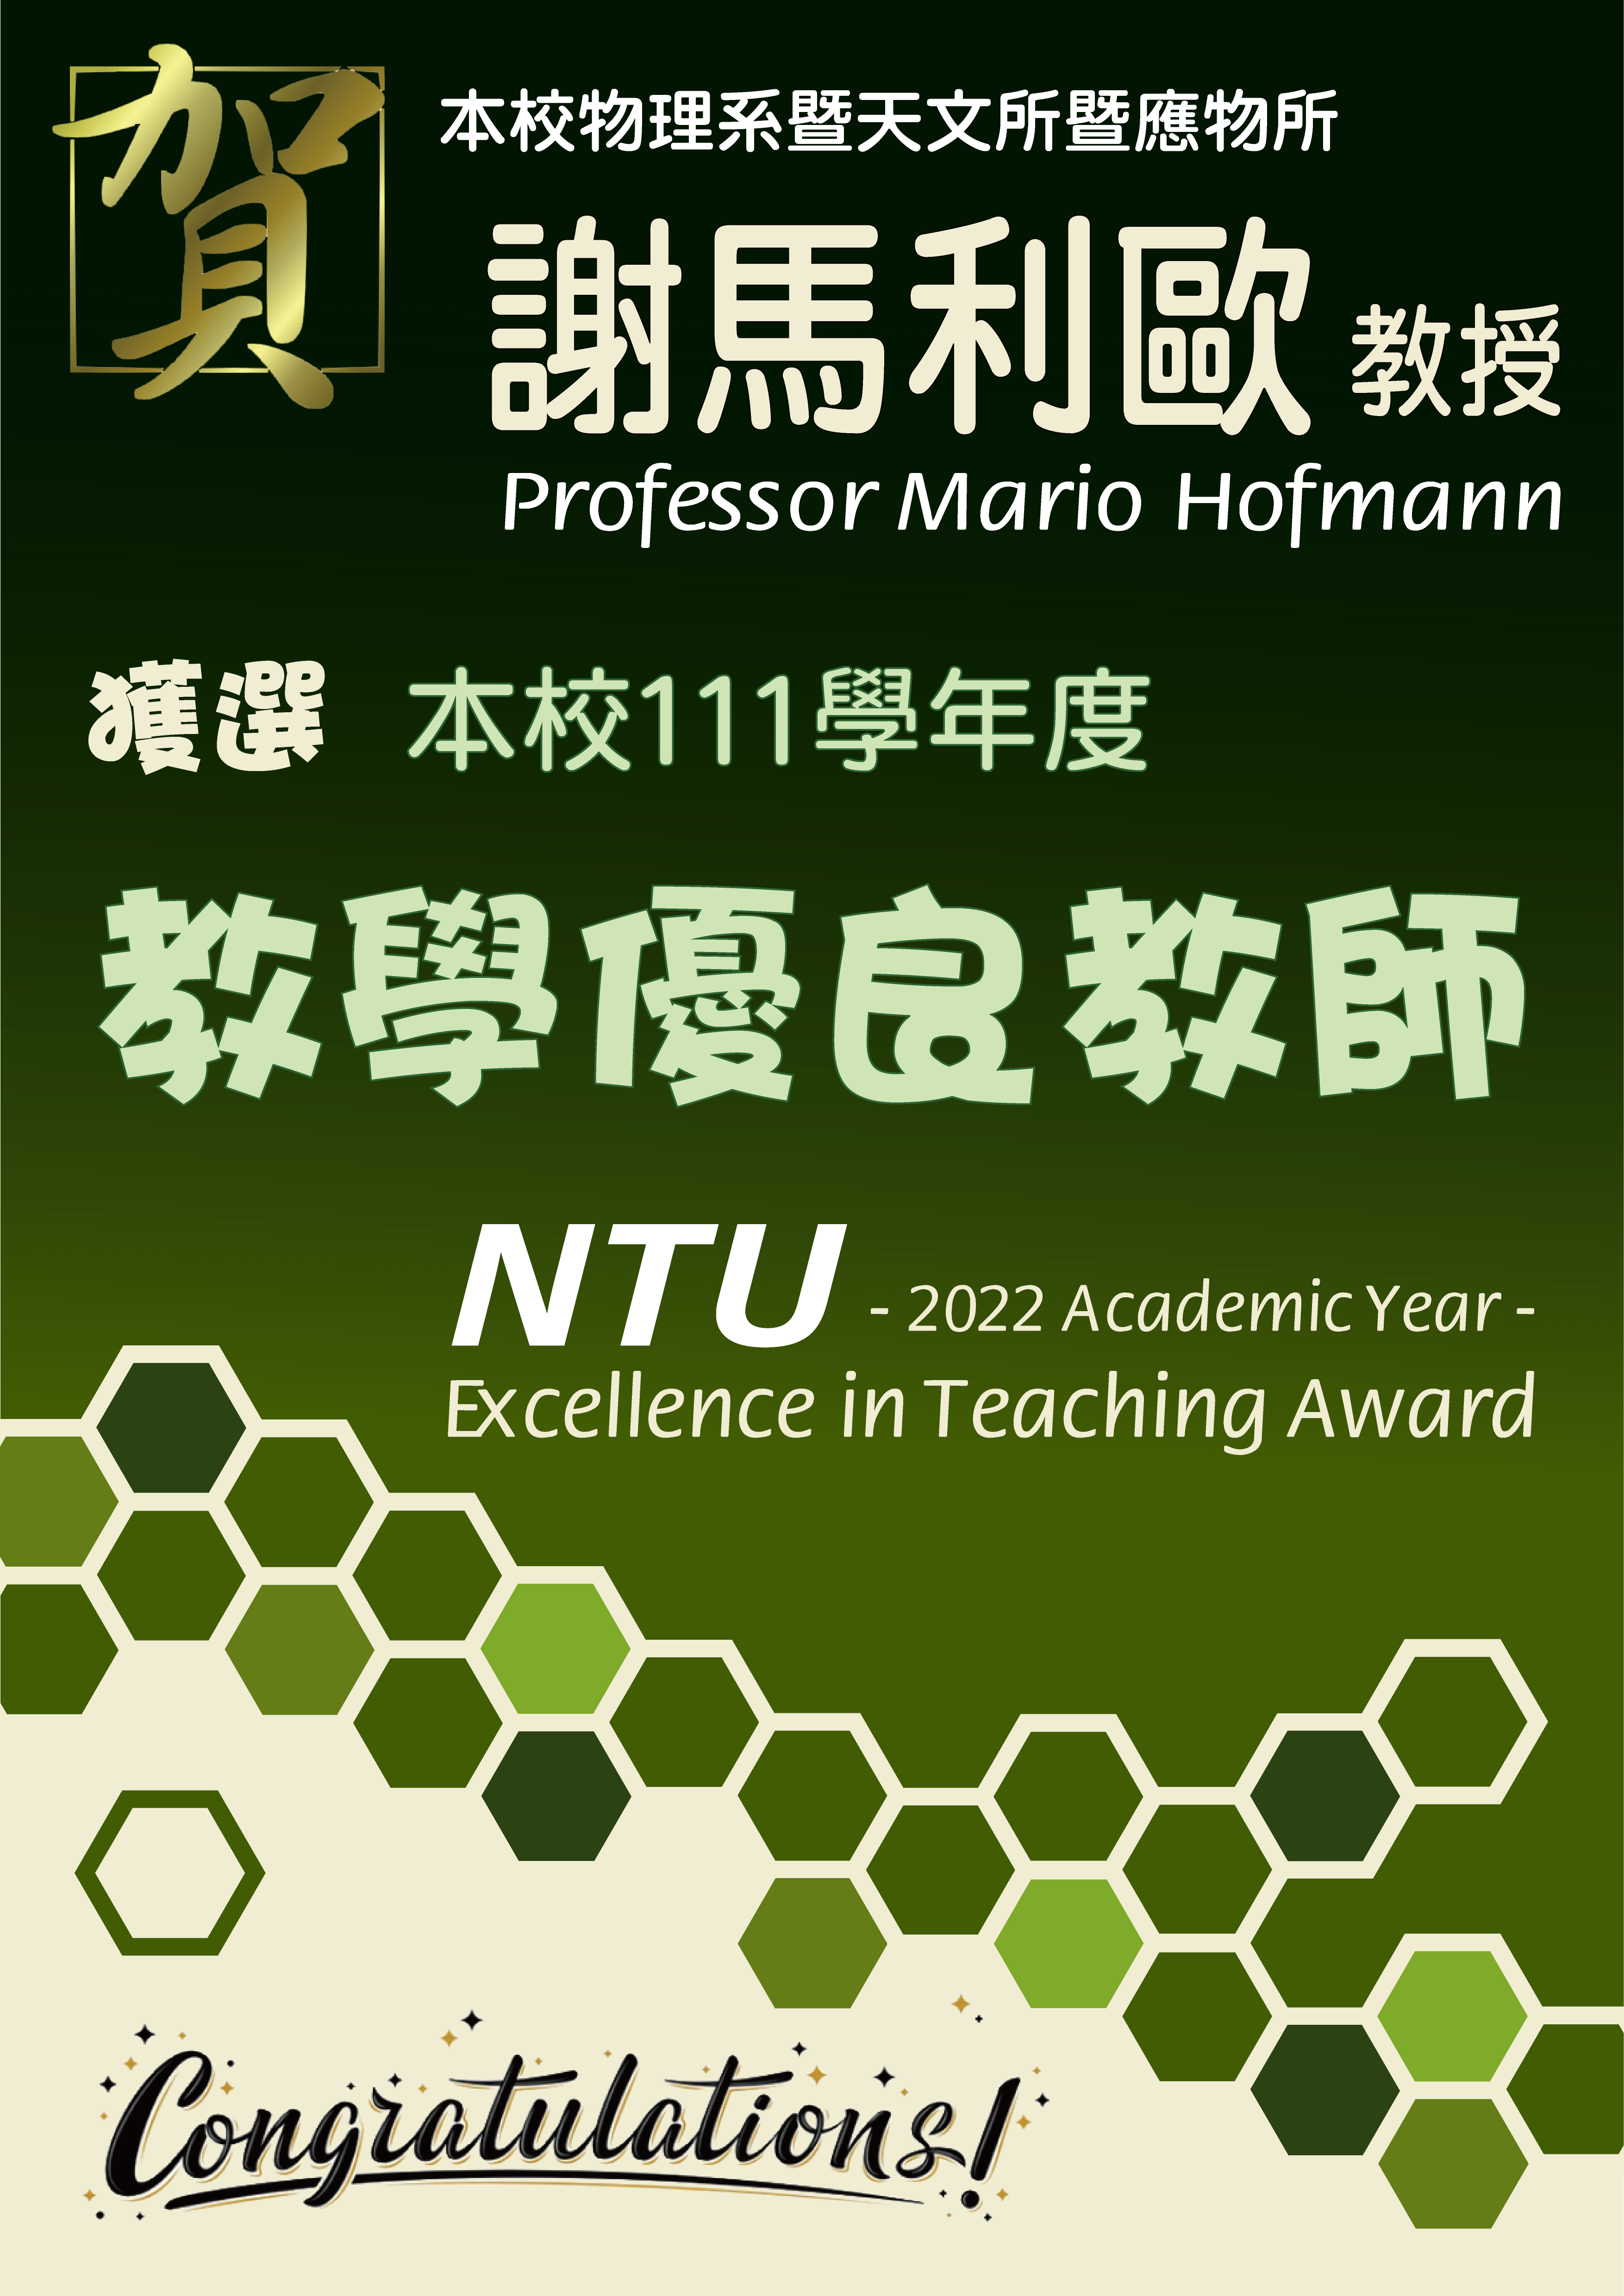 《賀》本系 共十位教師 獲選 111學年度《教學優良教師》(NTU Excellence in Teaching Award)